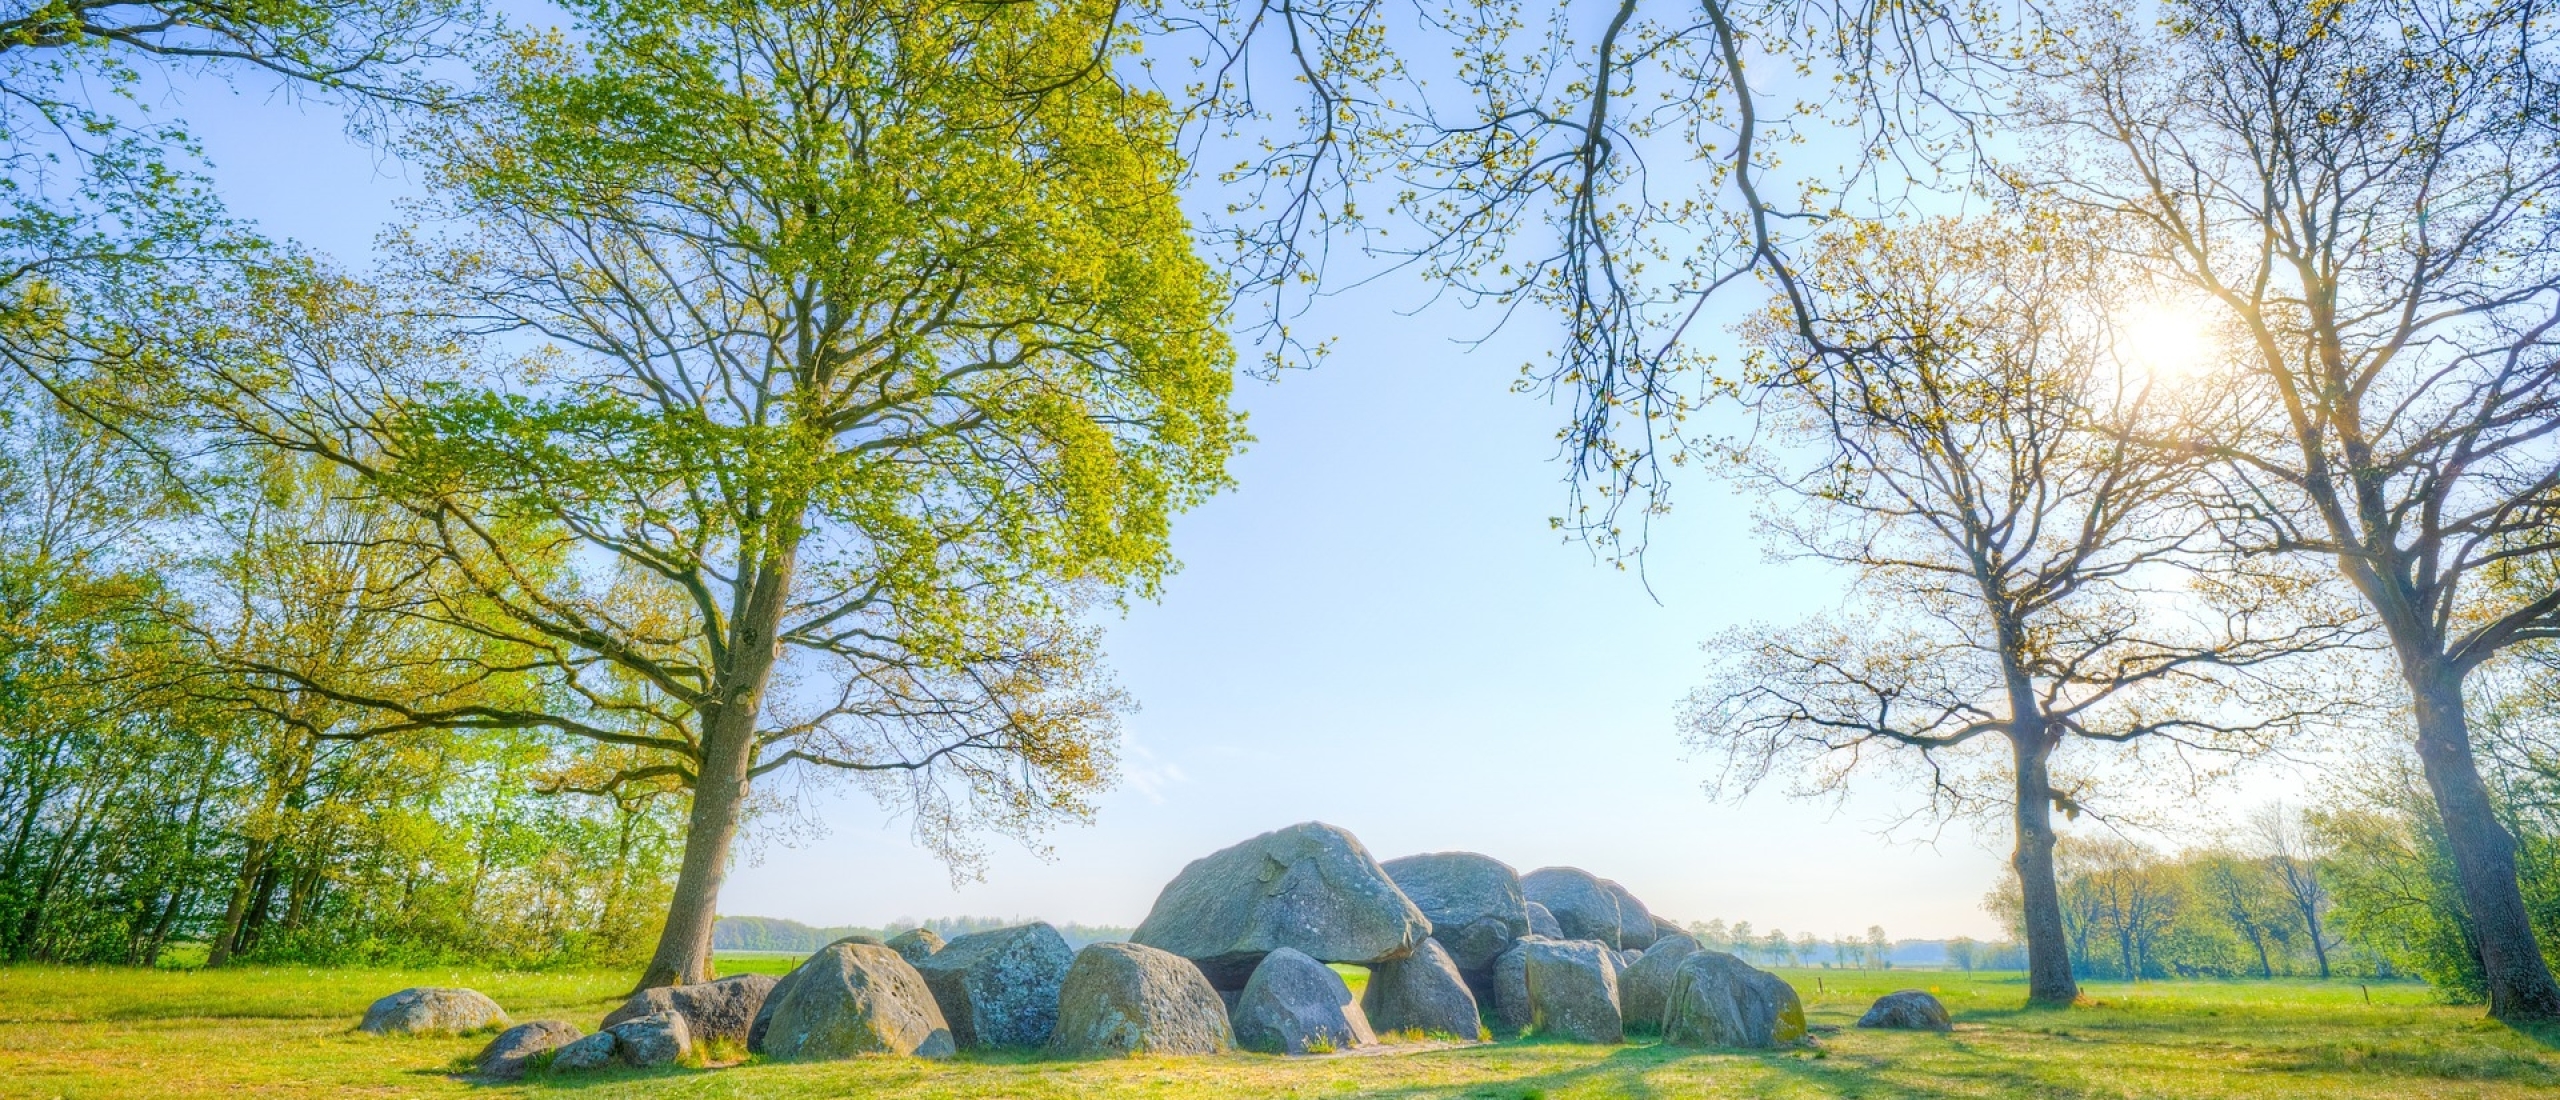 Deze camperplaatsen in Drenthe wil je gezien hebben